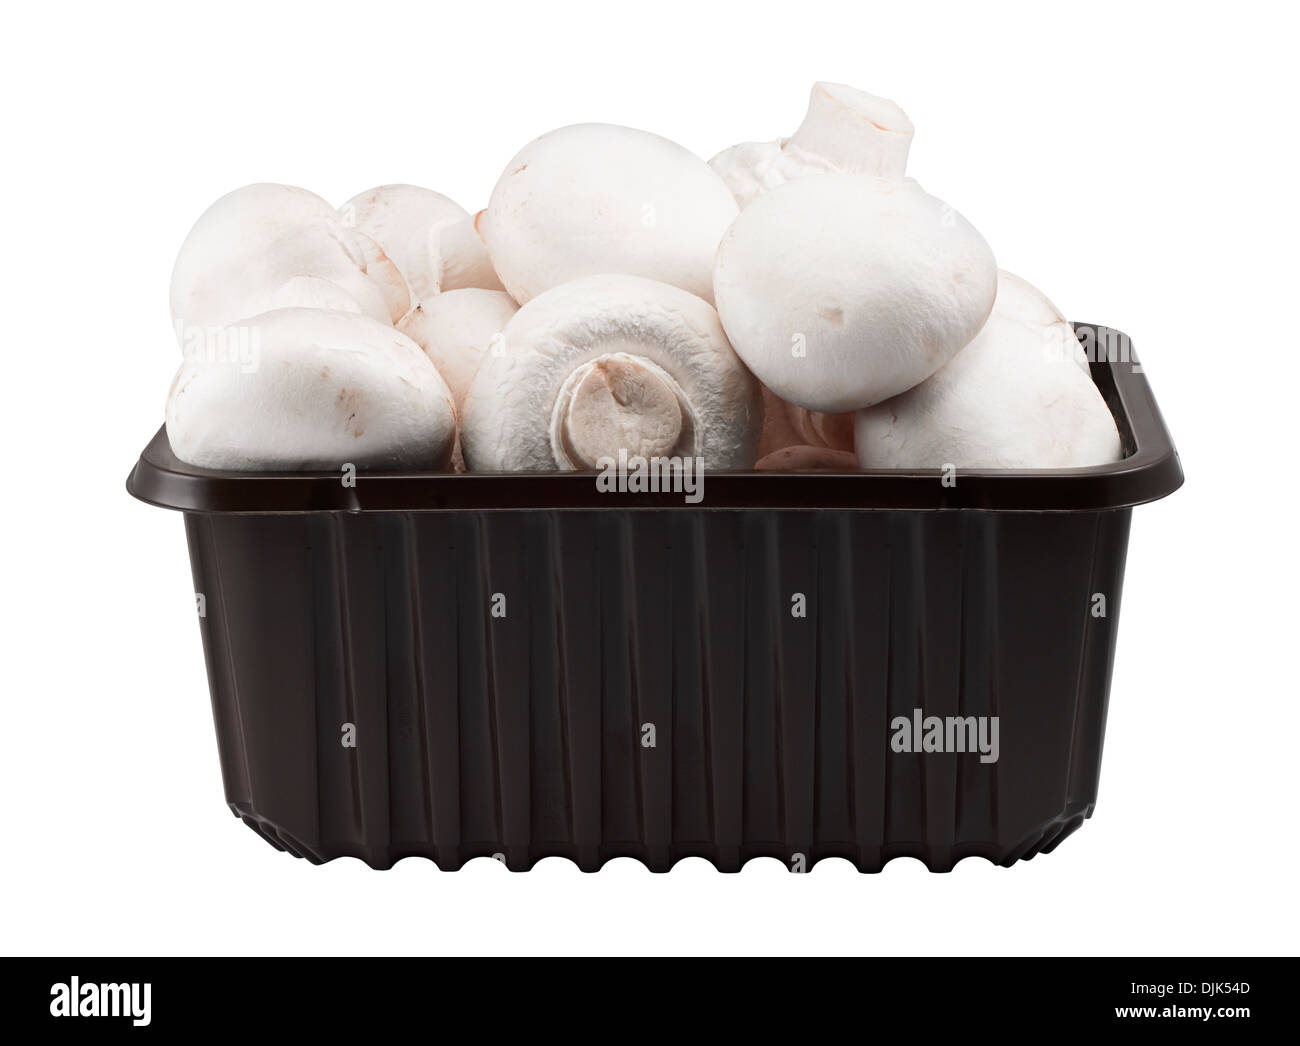 Fort de champignons frais dans un contenant en plastique souvent trouvés dans les supermarchés isolé sur fond blanc Banque D'Images